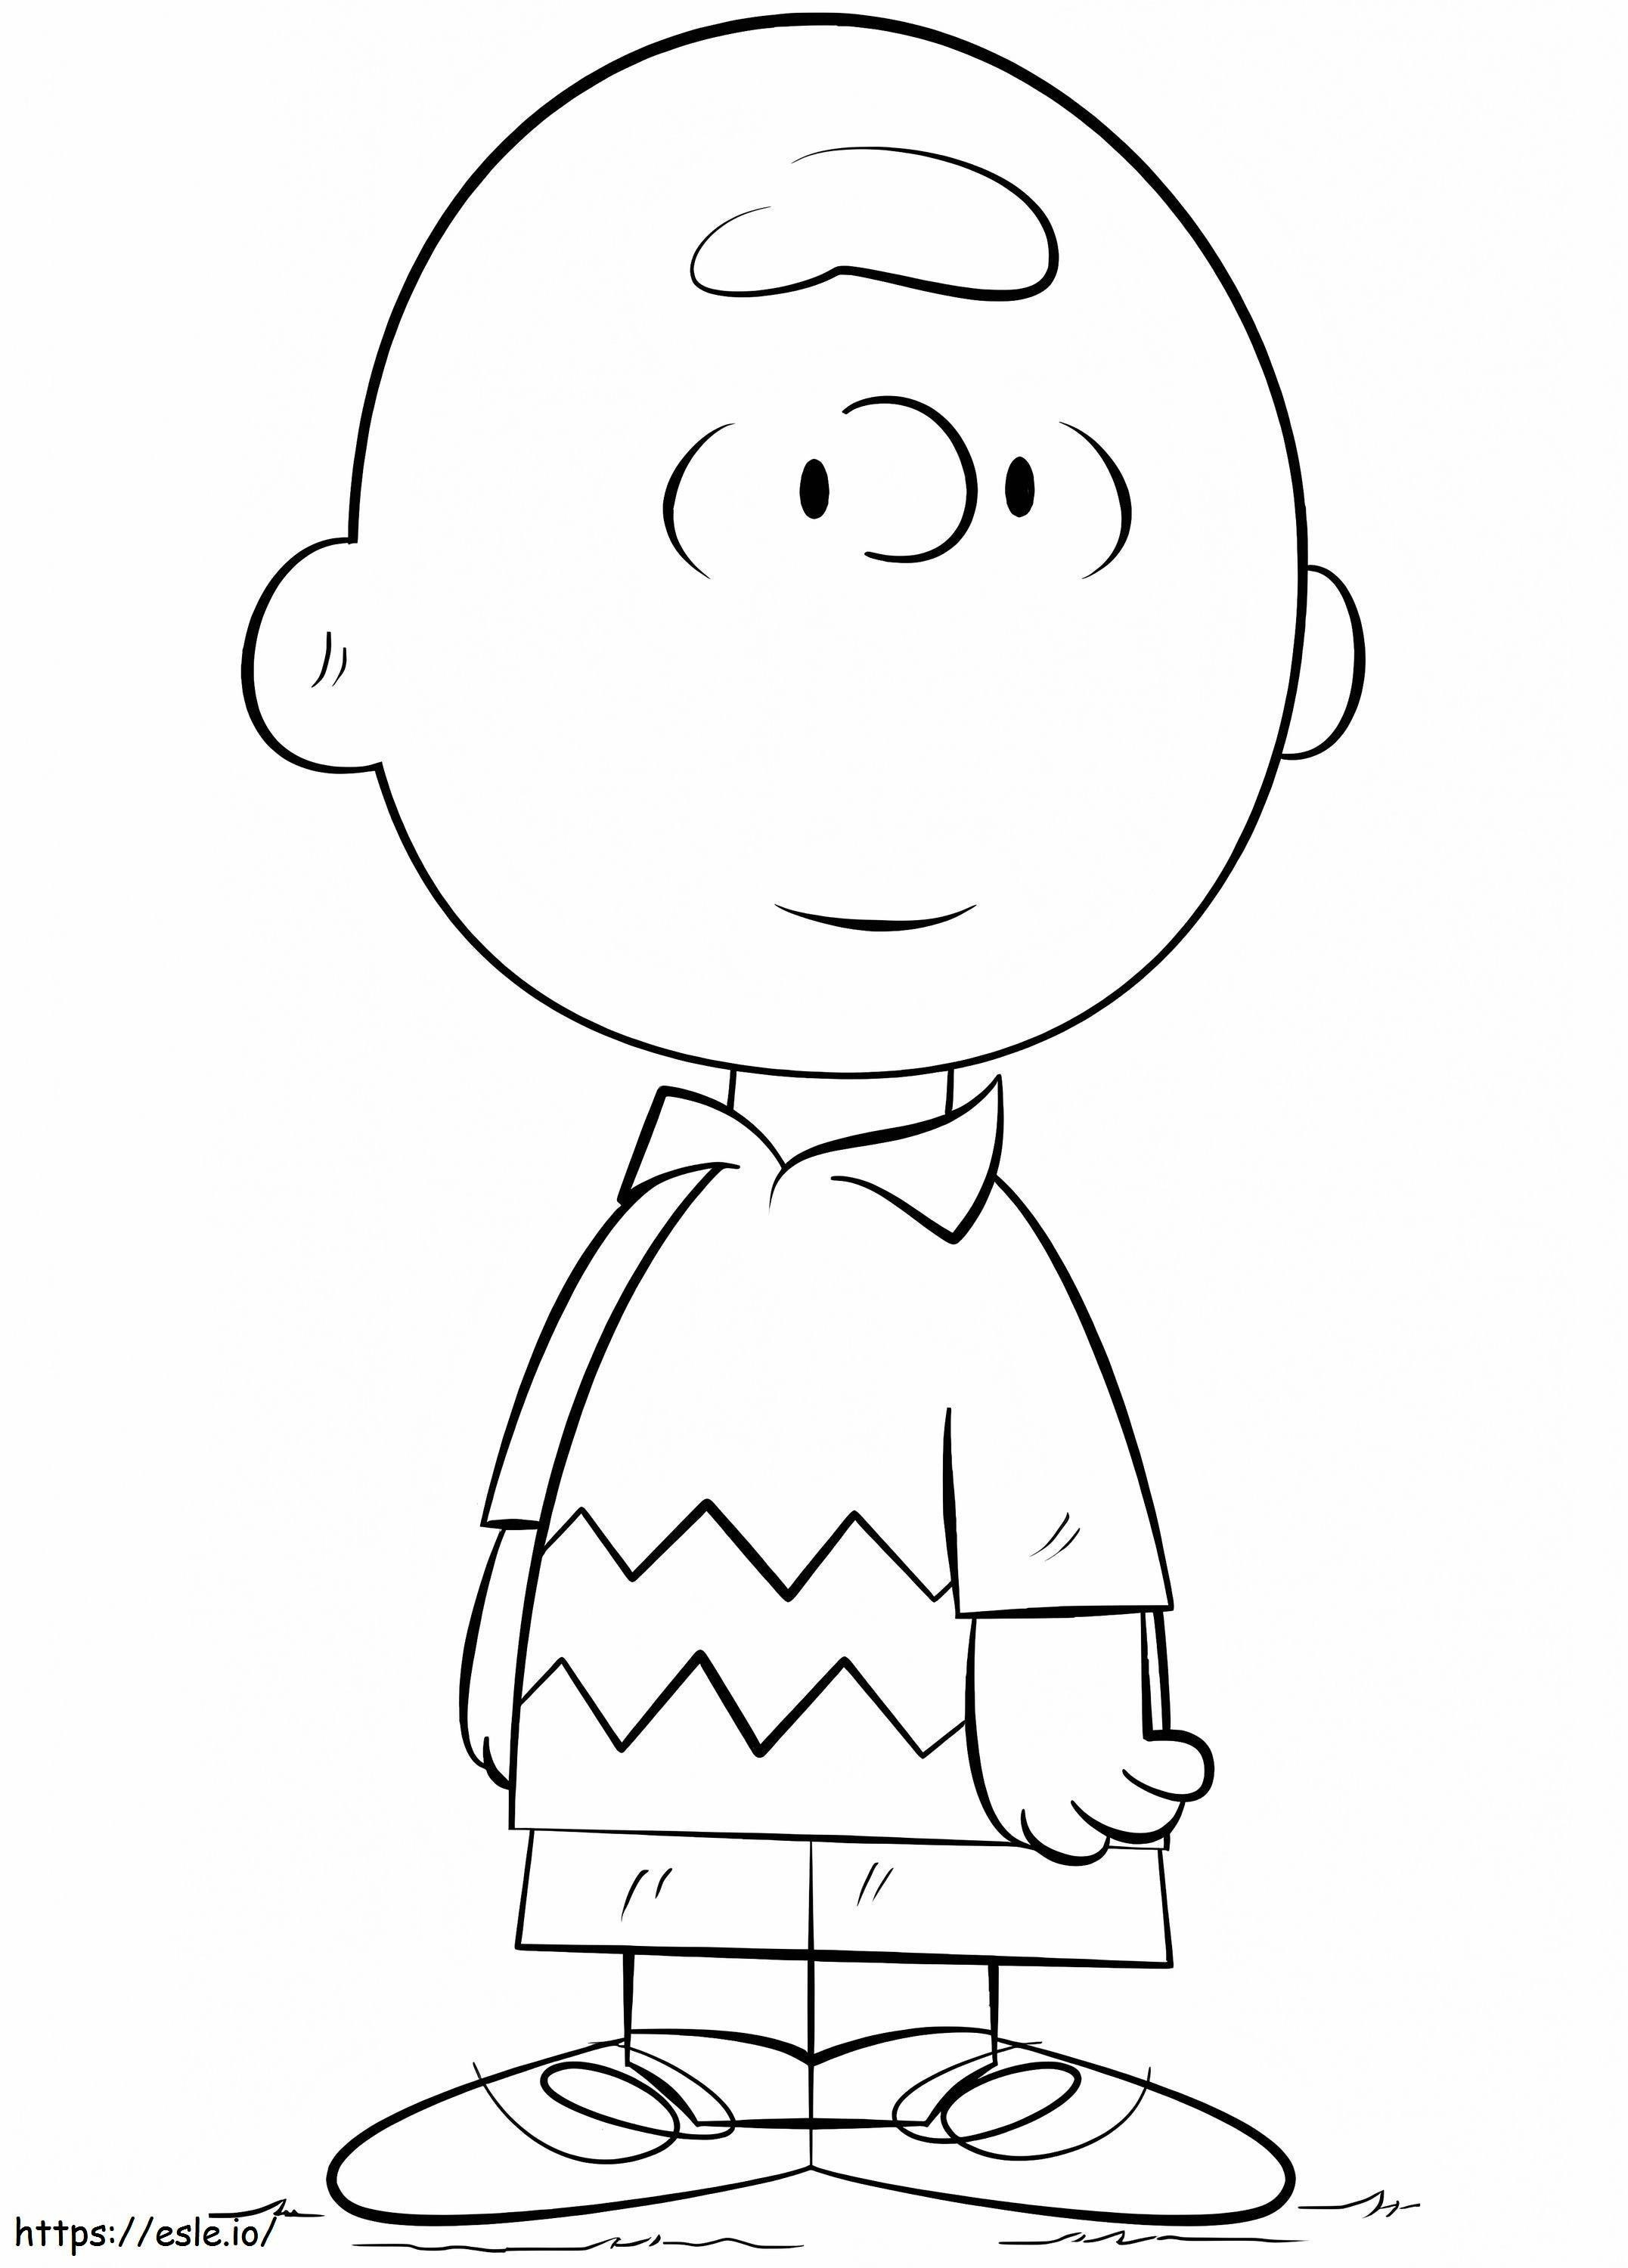 Charlie Brown ausmalbilder